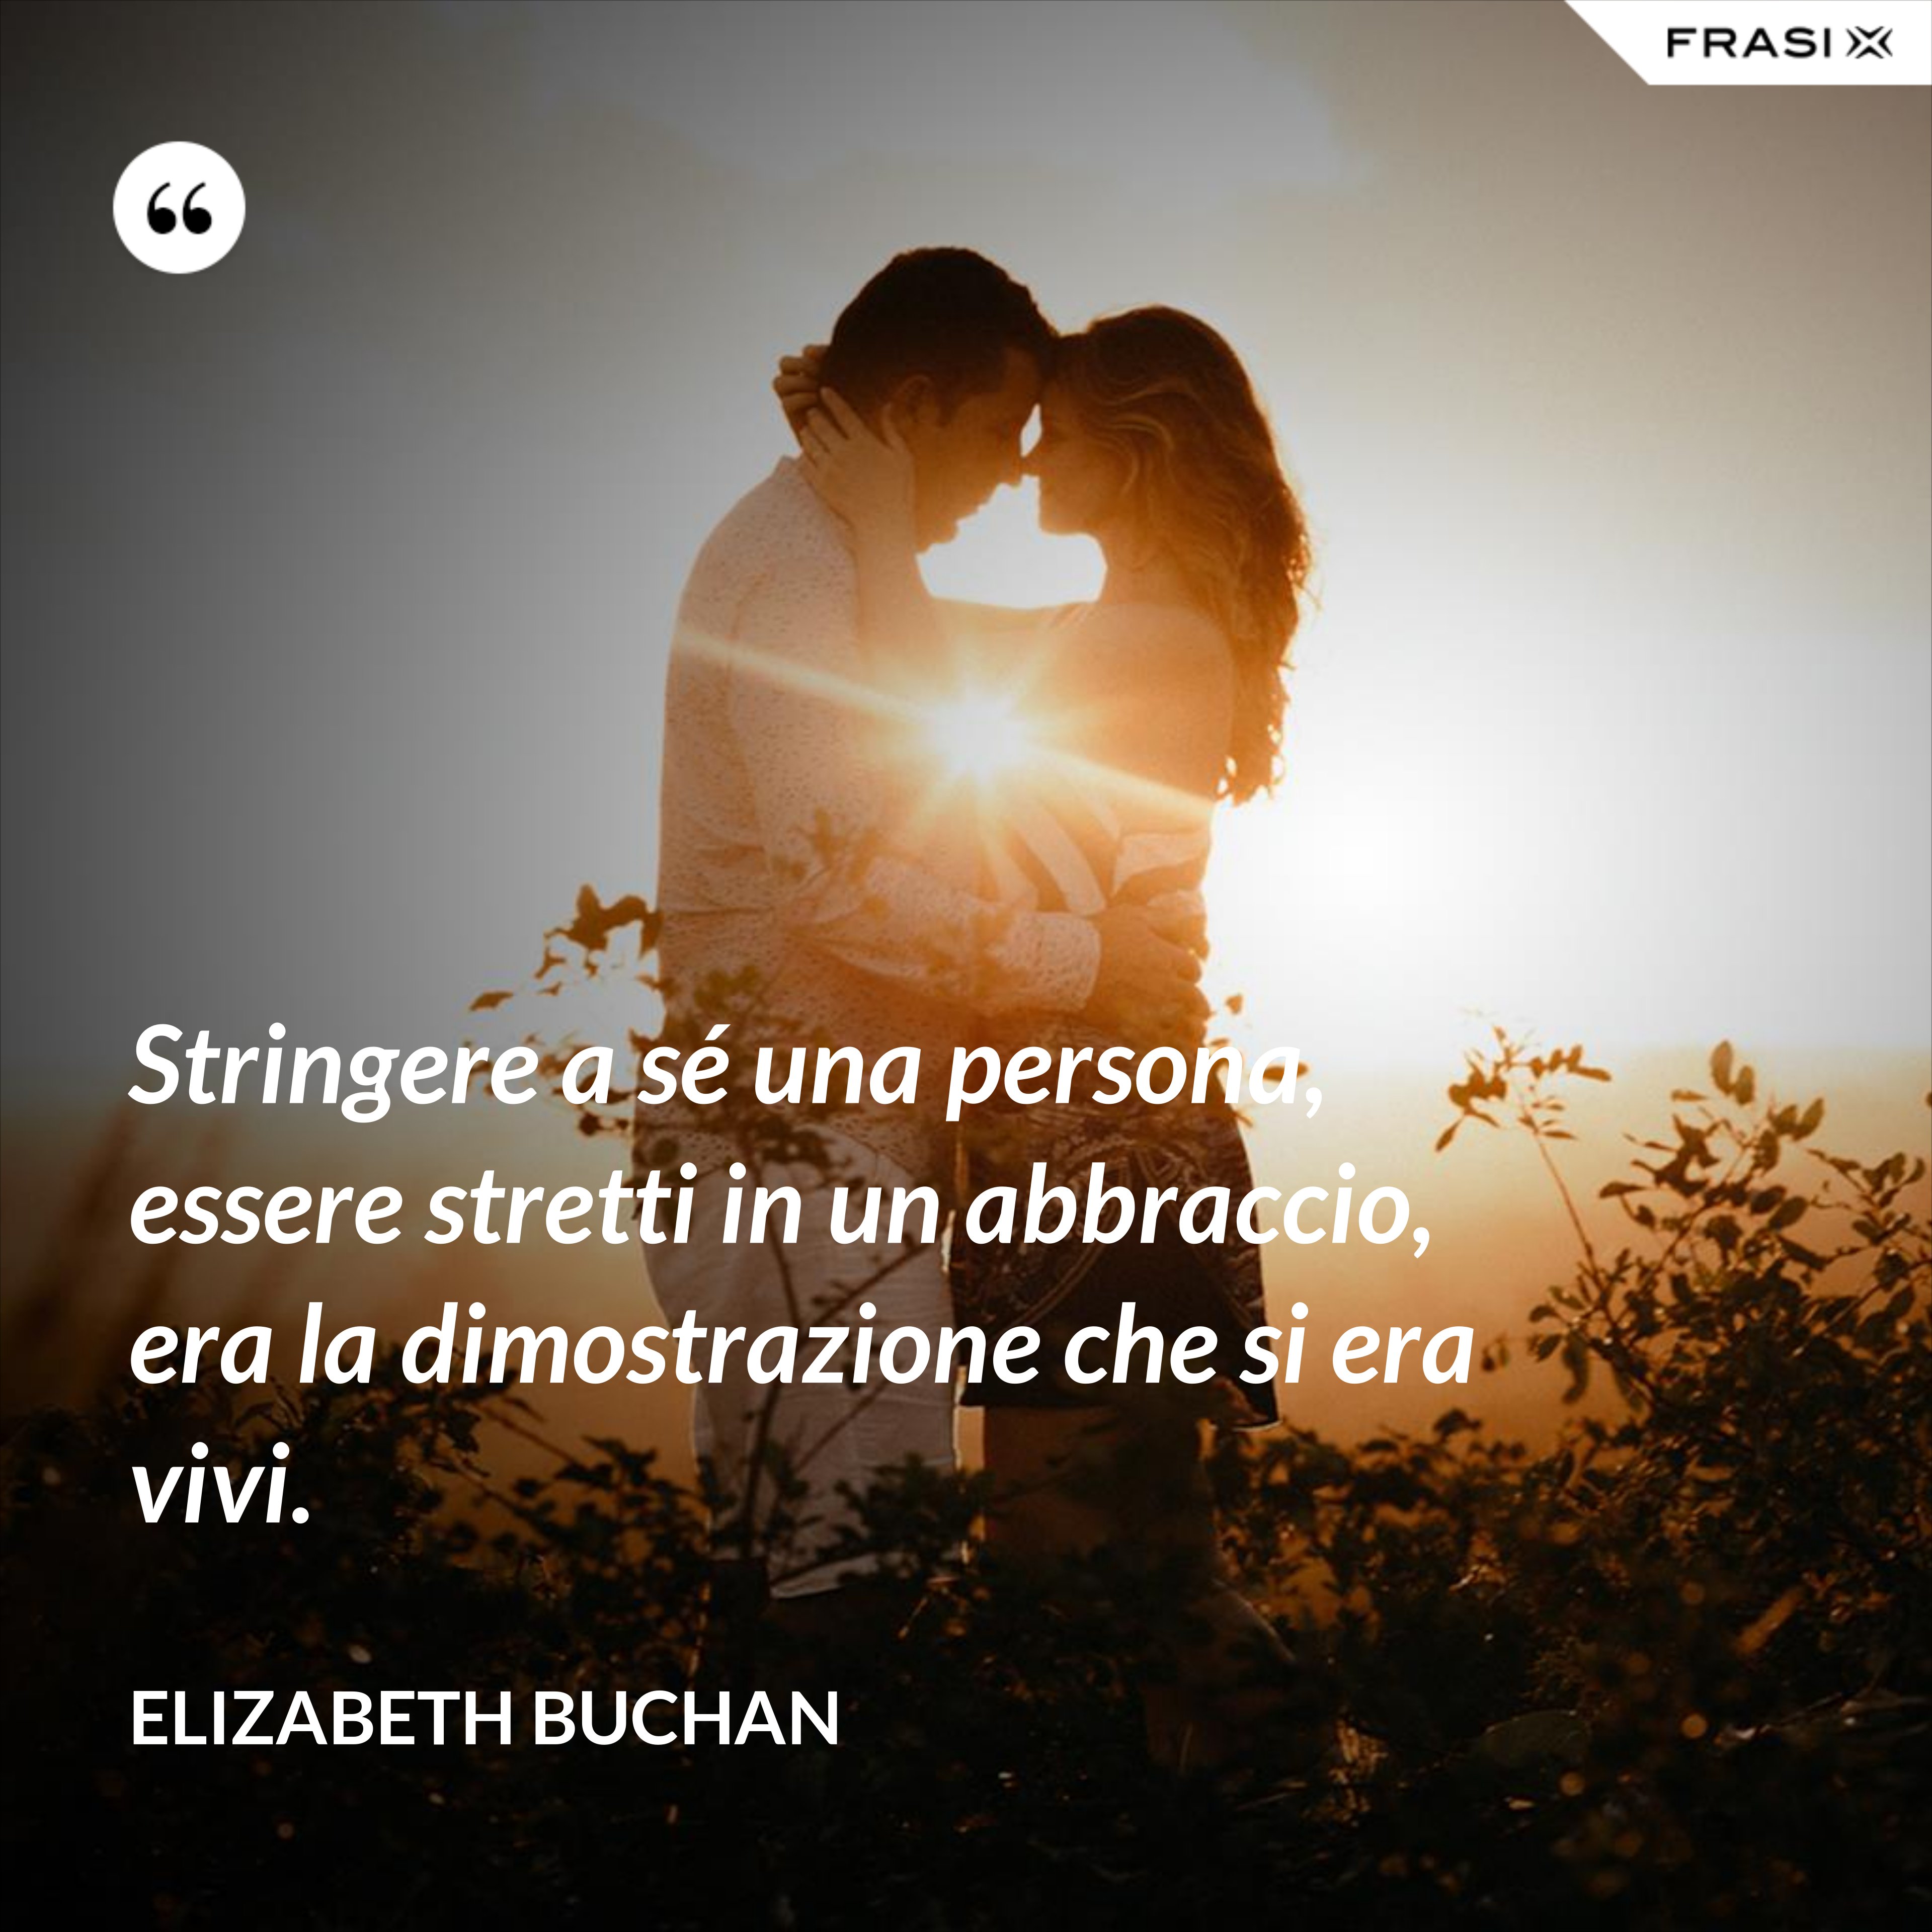 Stringere a sé una persona, essere stretti in un abbraccio, era la dimostrazione che si era vivi. - Elizabeth Buchan